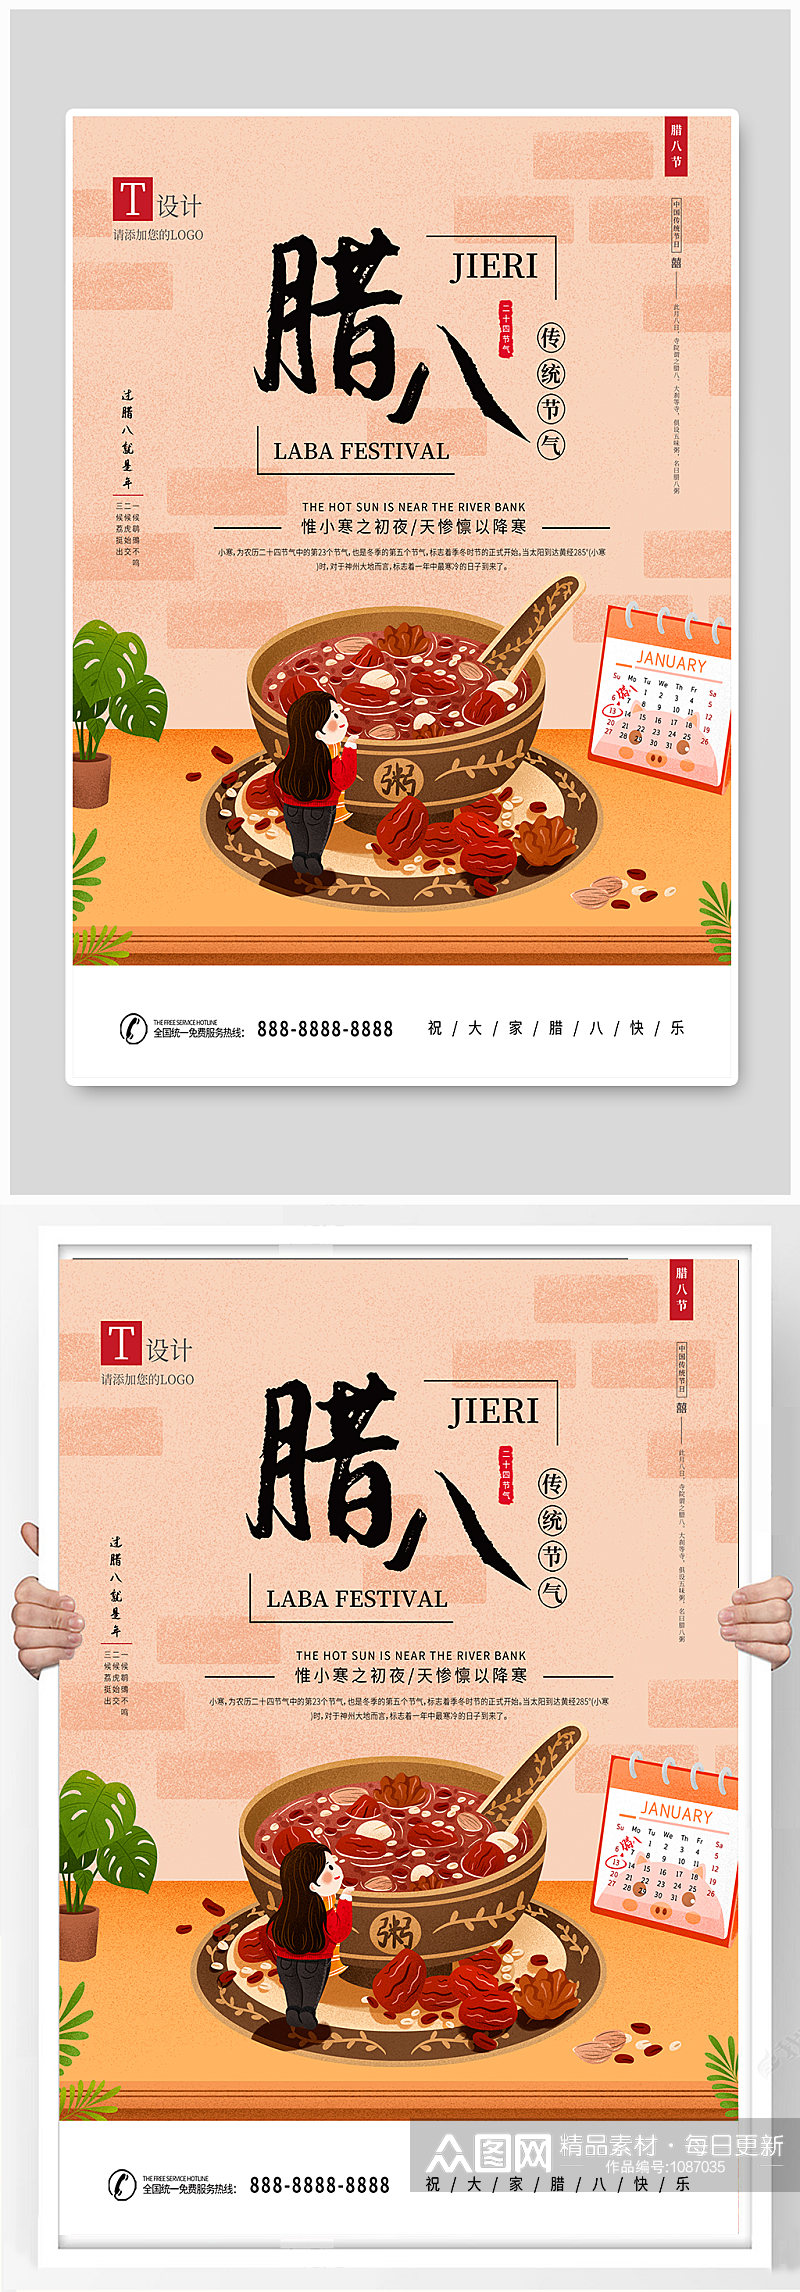 腊八节中国传统文化节日海报素材